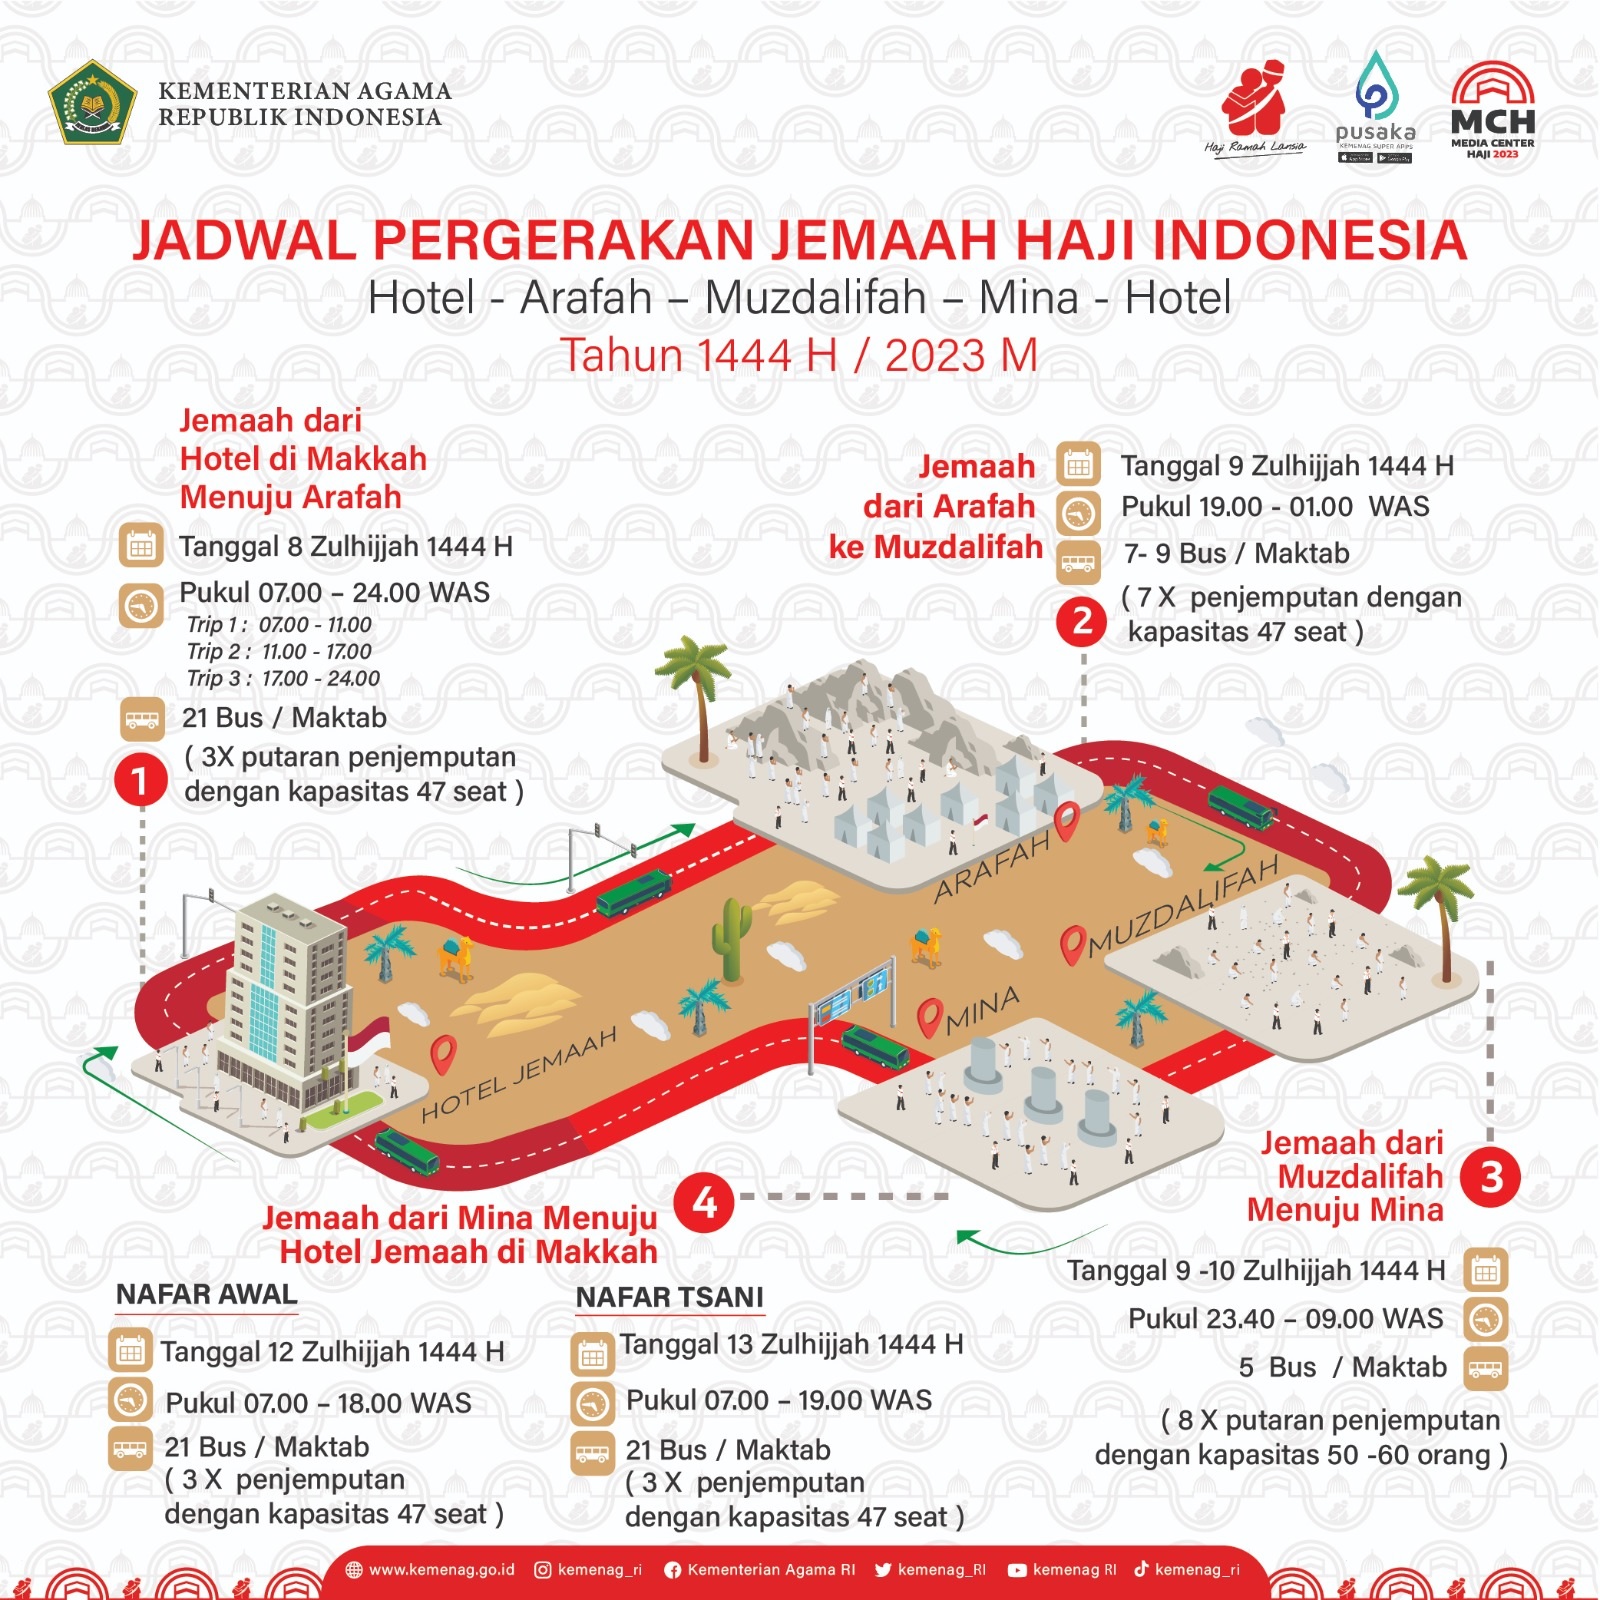 Catat, Ini Alur Pergerakan Jemaah Haji Indonesia saat Puncak Haji Armina